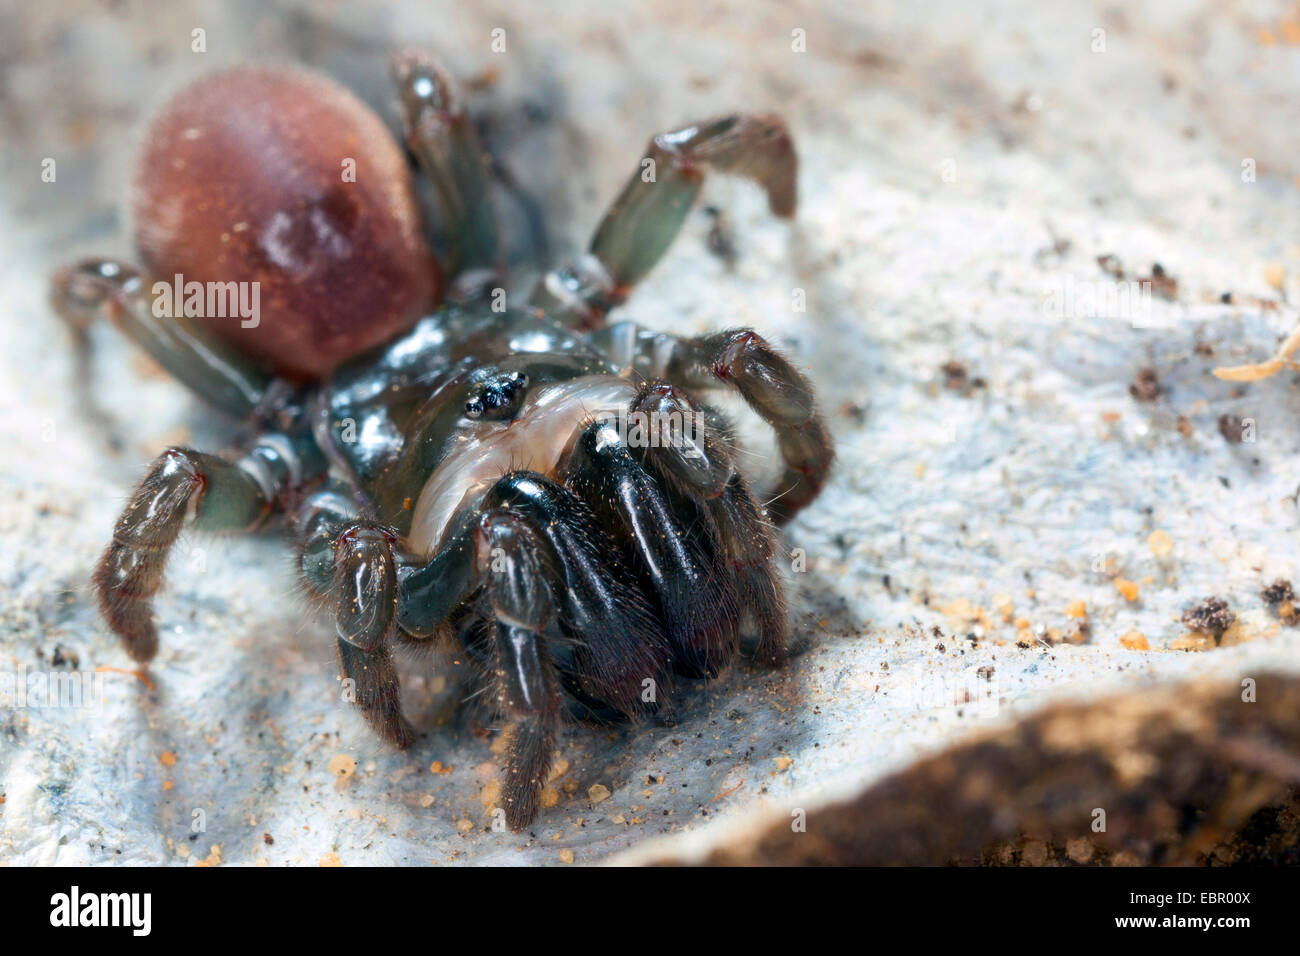 Sac à main-Spider web (Atypus affinis), sur son site web, Allemagne Banque D'Images